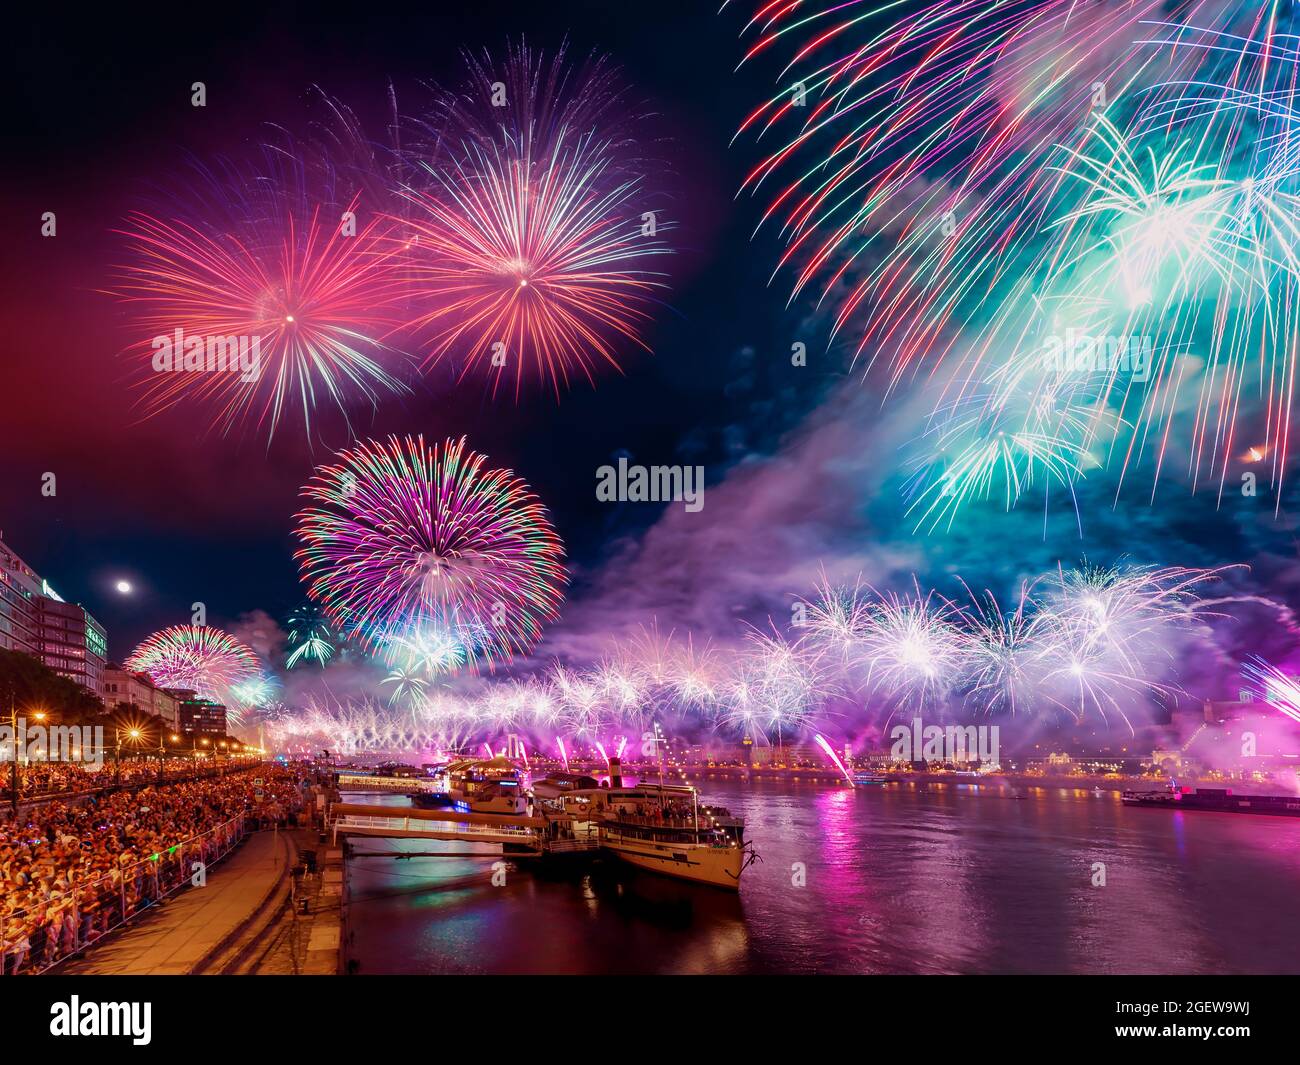 Feuerwerk zum State Foundation Day am 2022 20.. August. Feuerwerk über der Donau in Budapest, Ungarn. Buda Schloss auf der linken Seite Kette bri Stockfoto